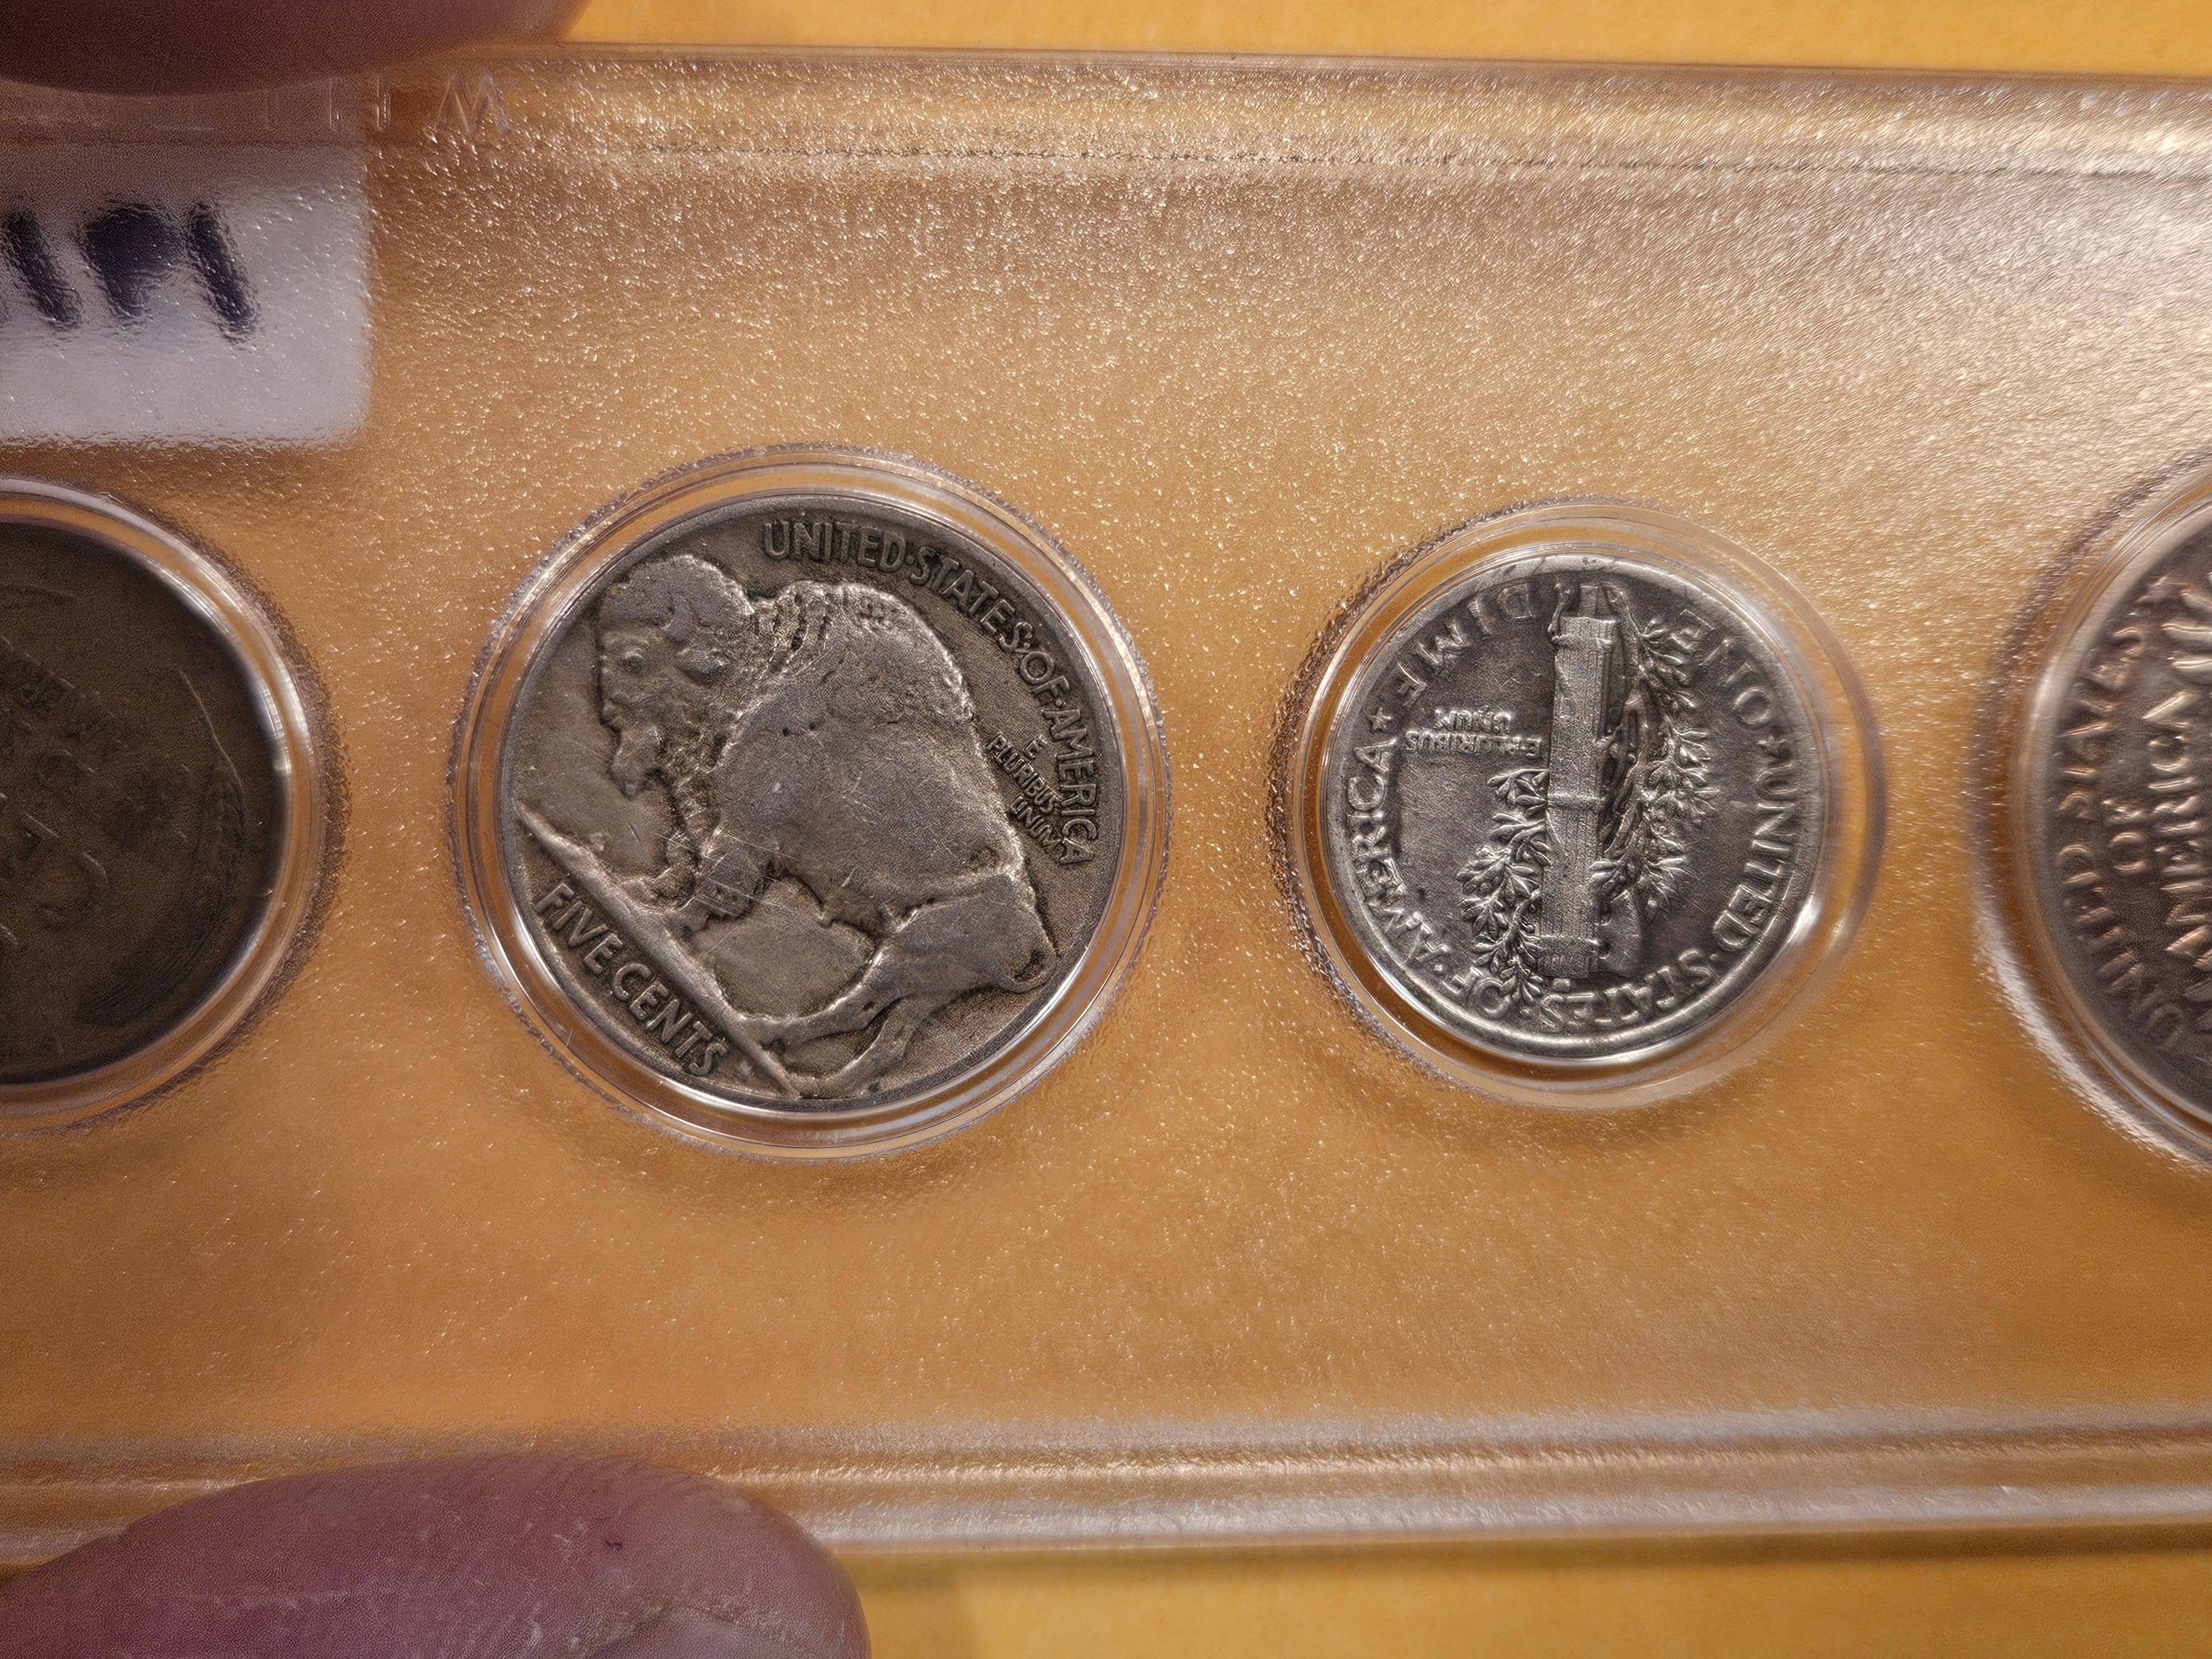 1919 Year coin set